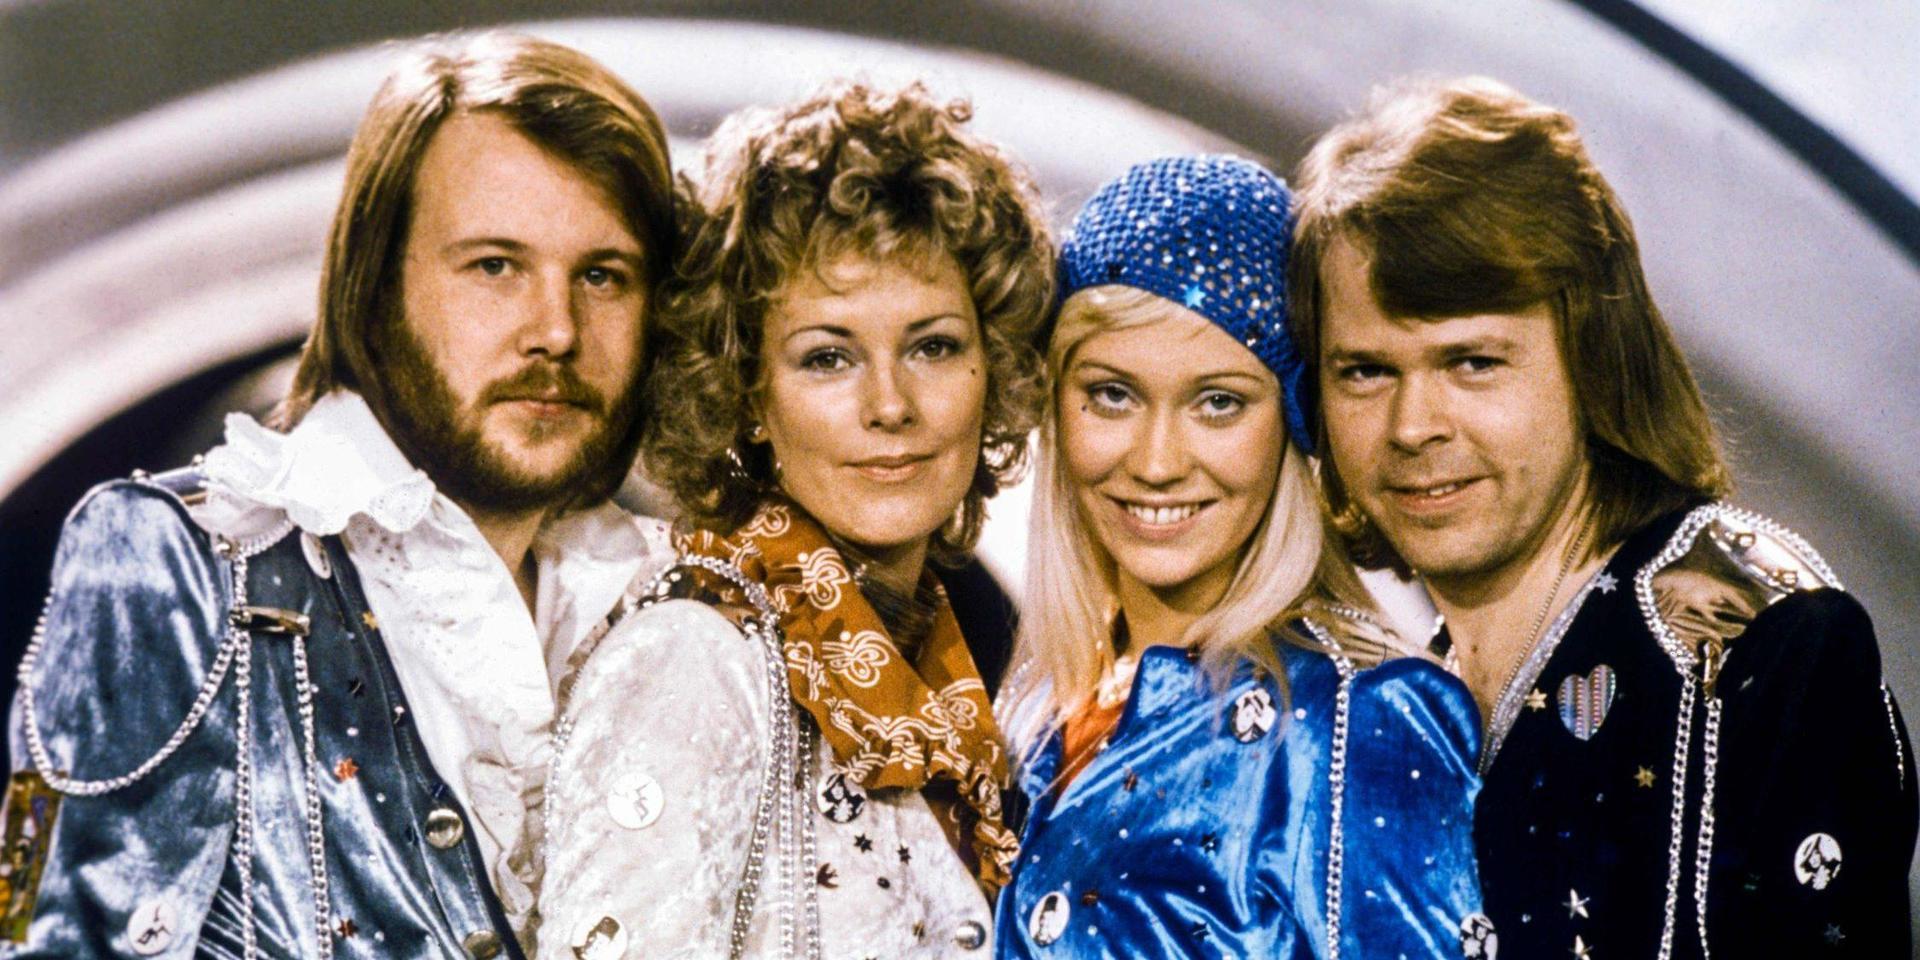 Abba 1974 i Stockholm efter att ha vunnit Melodifestivalen med låten ”Waterloo”. Från vänster: Benny Andersson, Anni-Frid Lyngstad, Agnetha Fltskog and Björn Ulvaeus.